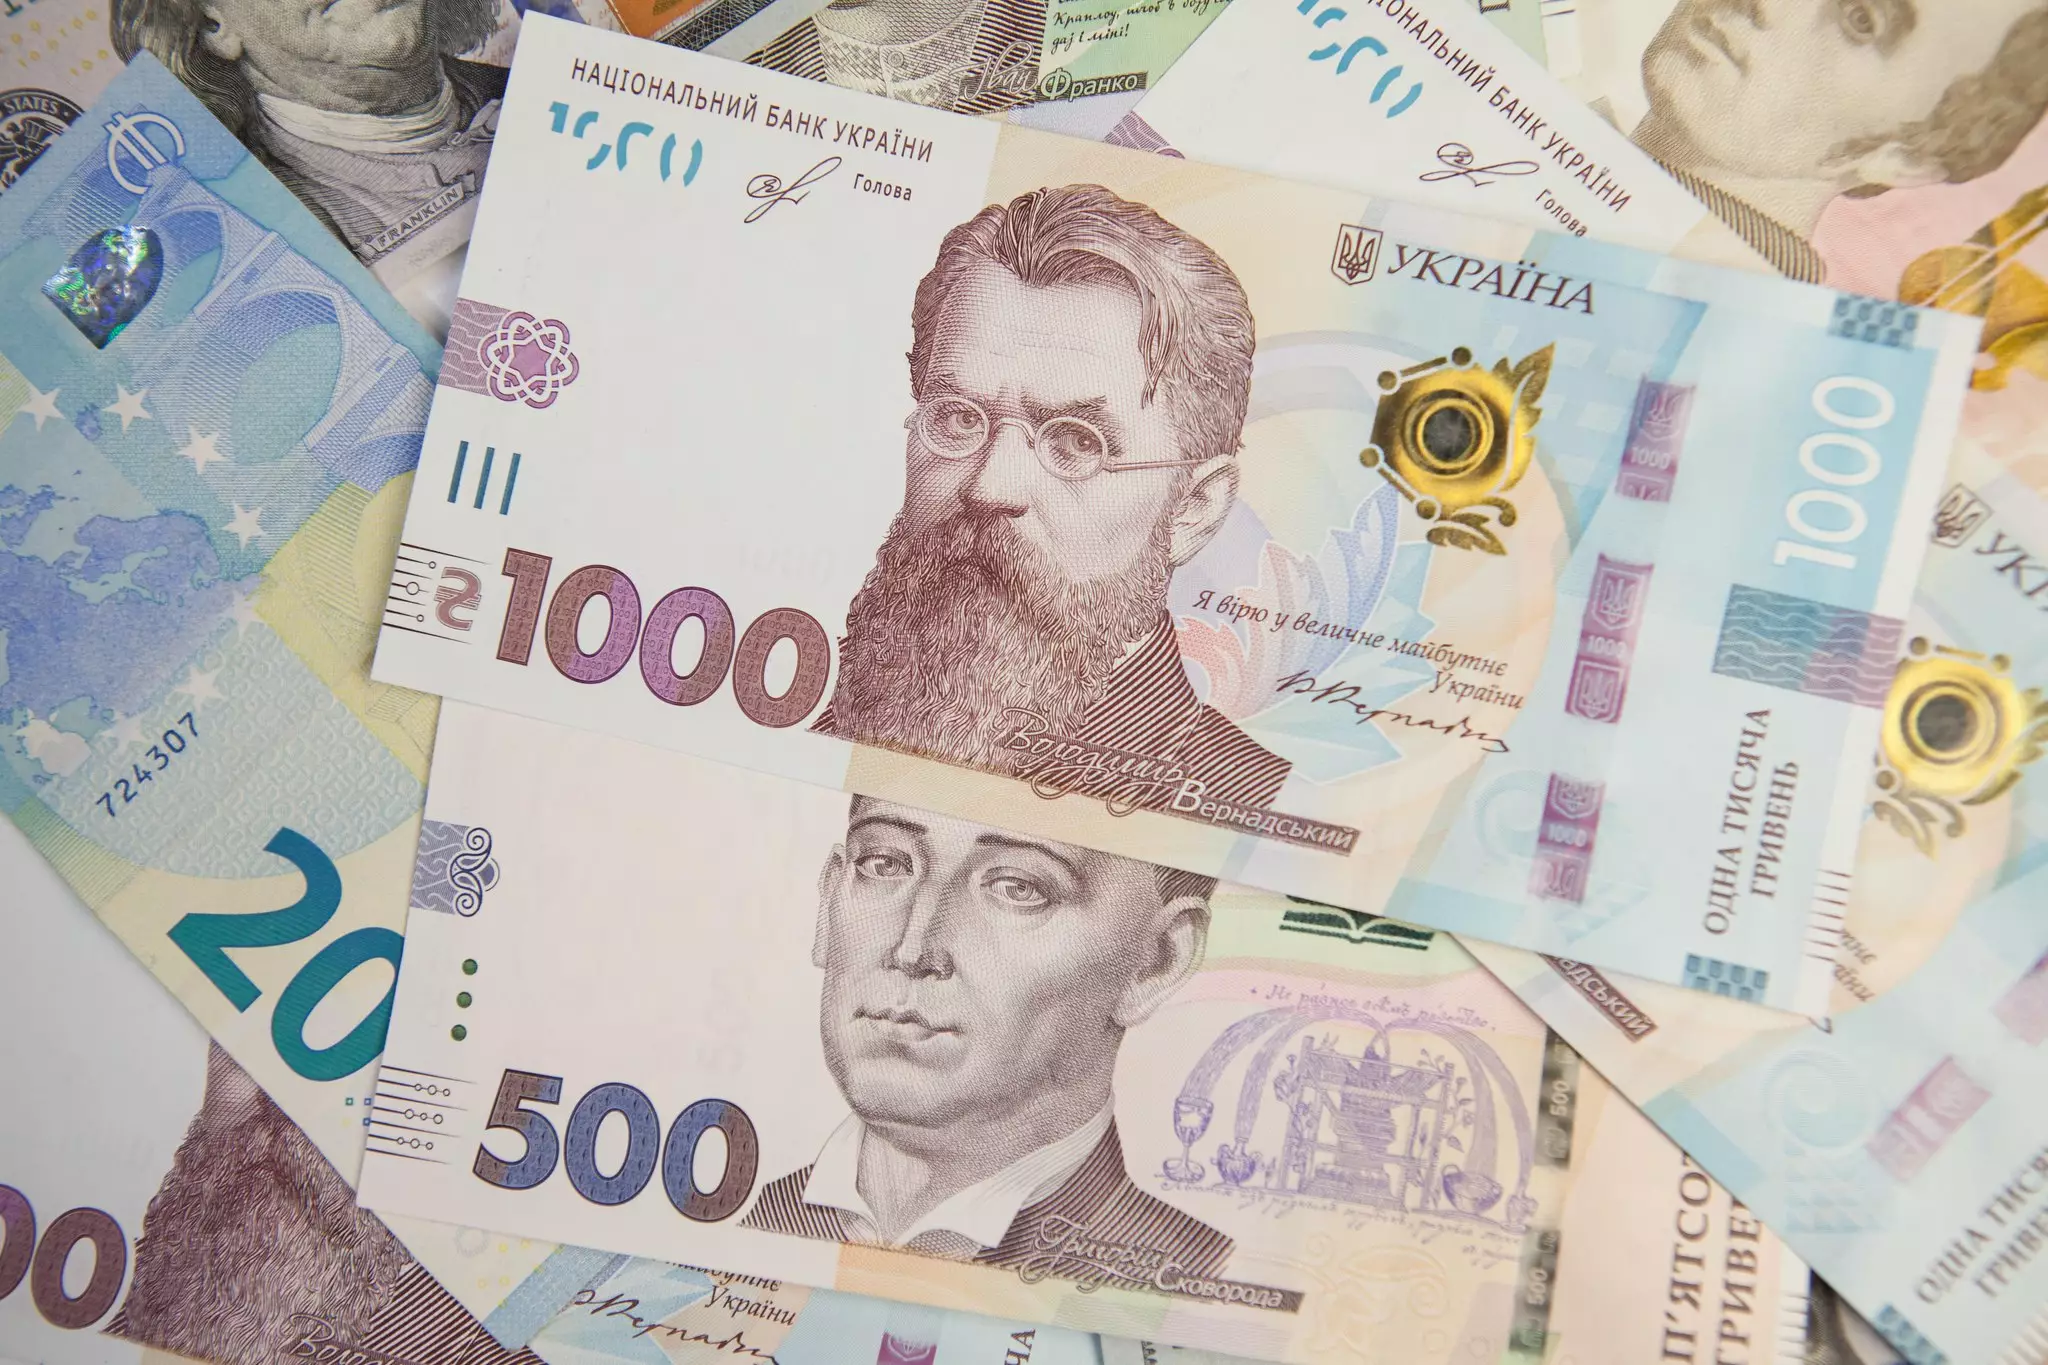 1000 гривен в сравнении с другими банкнотами